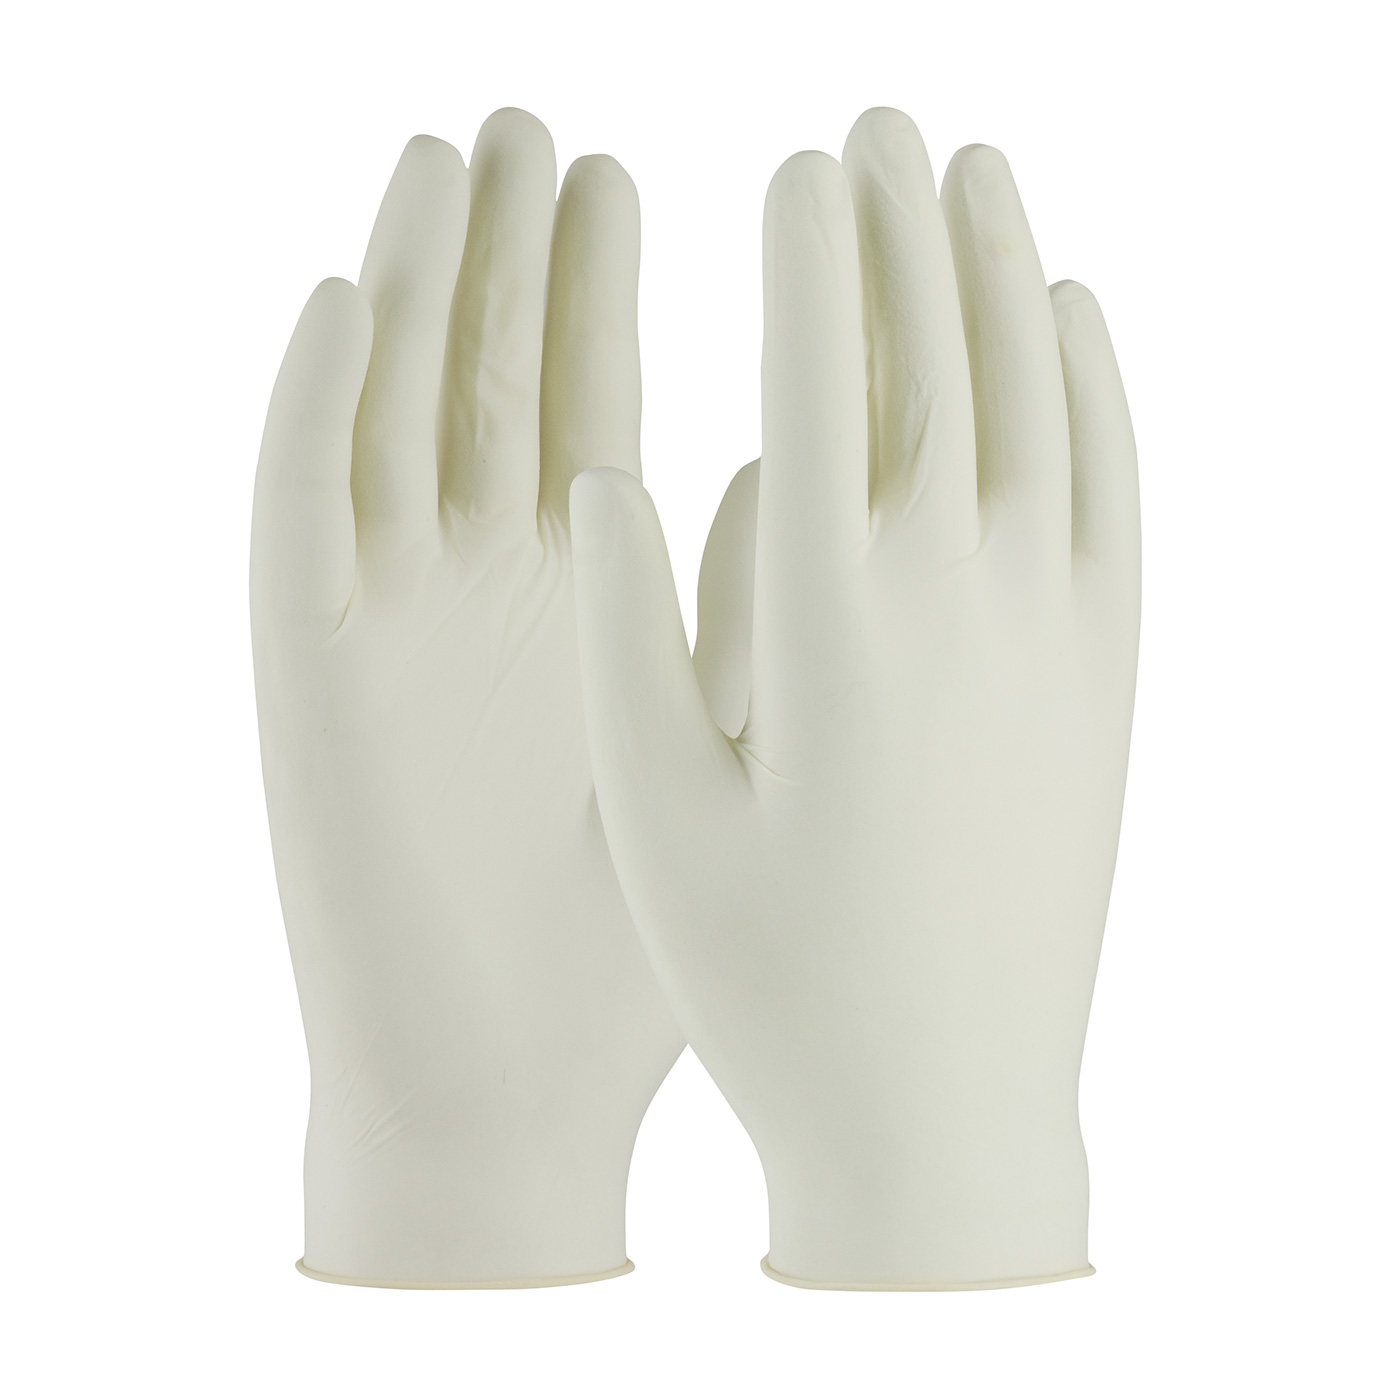 PIP 62-321PF/L Ambi-dex Premium Grade Disposable Latex Glove, Powder Free - 5 Mil - Large - Box of 100 PID-62 321PF L